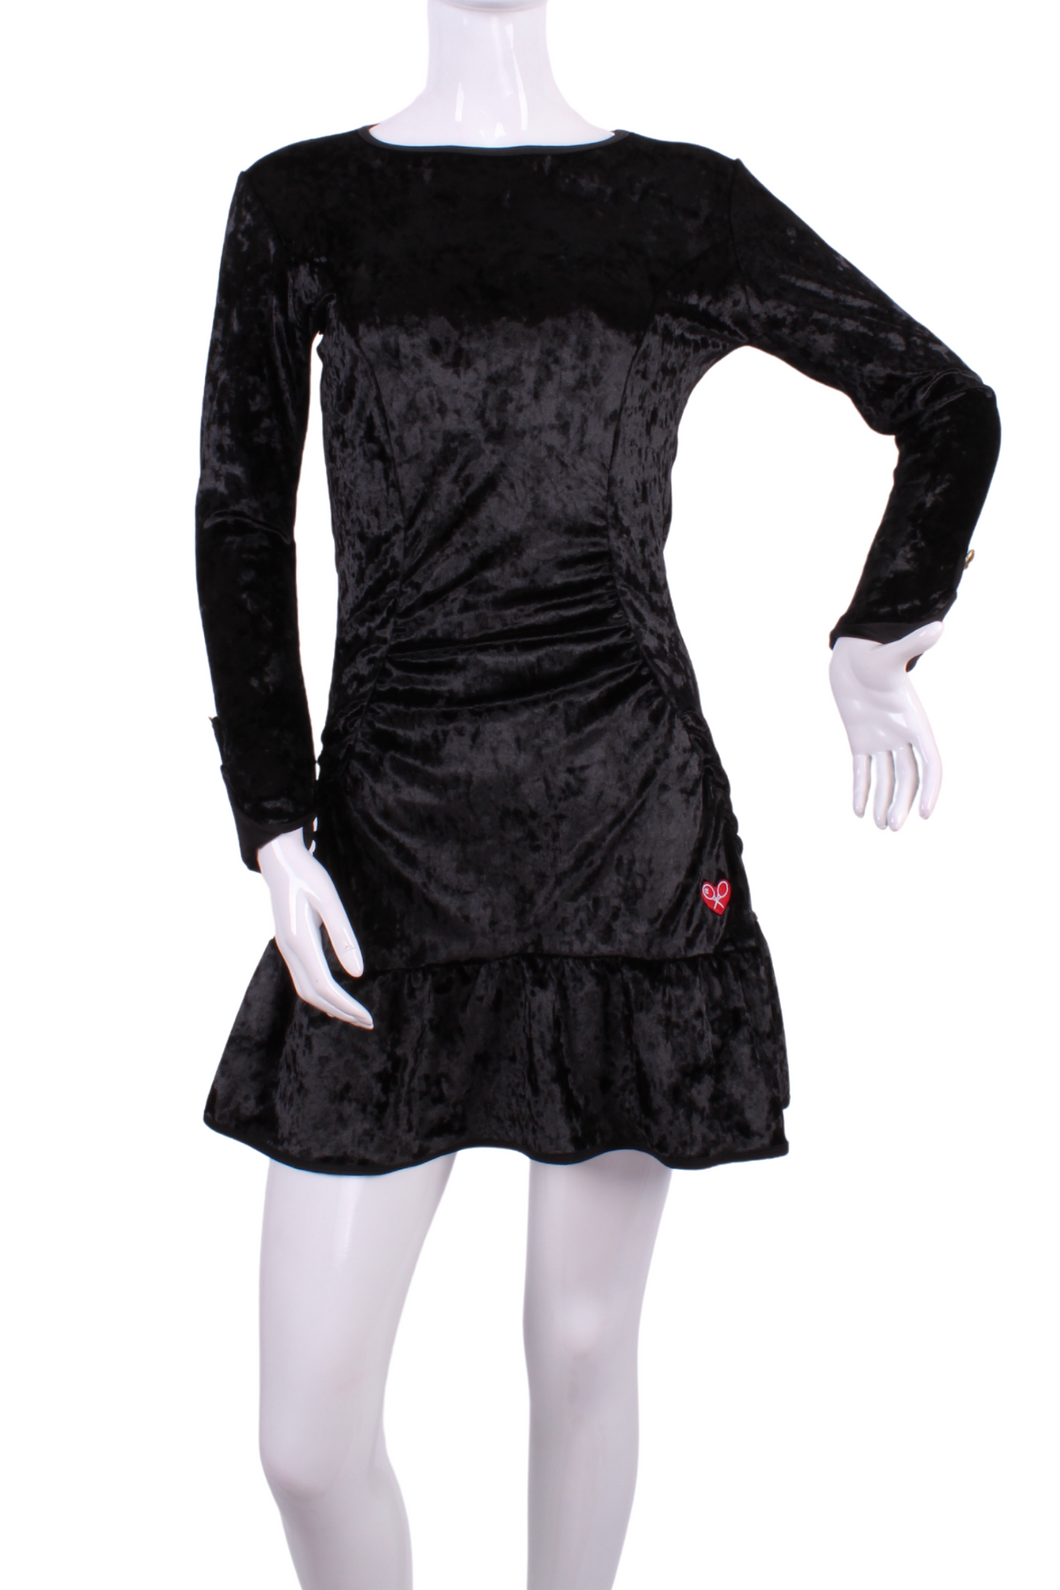 Monroe Crushed Black Velvet Long Sleeve Tennis Dress - I LOVE MY DOUBLES PARTNER!!!